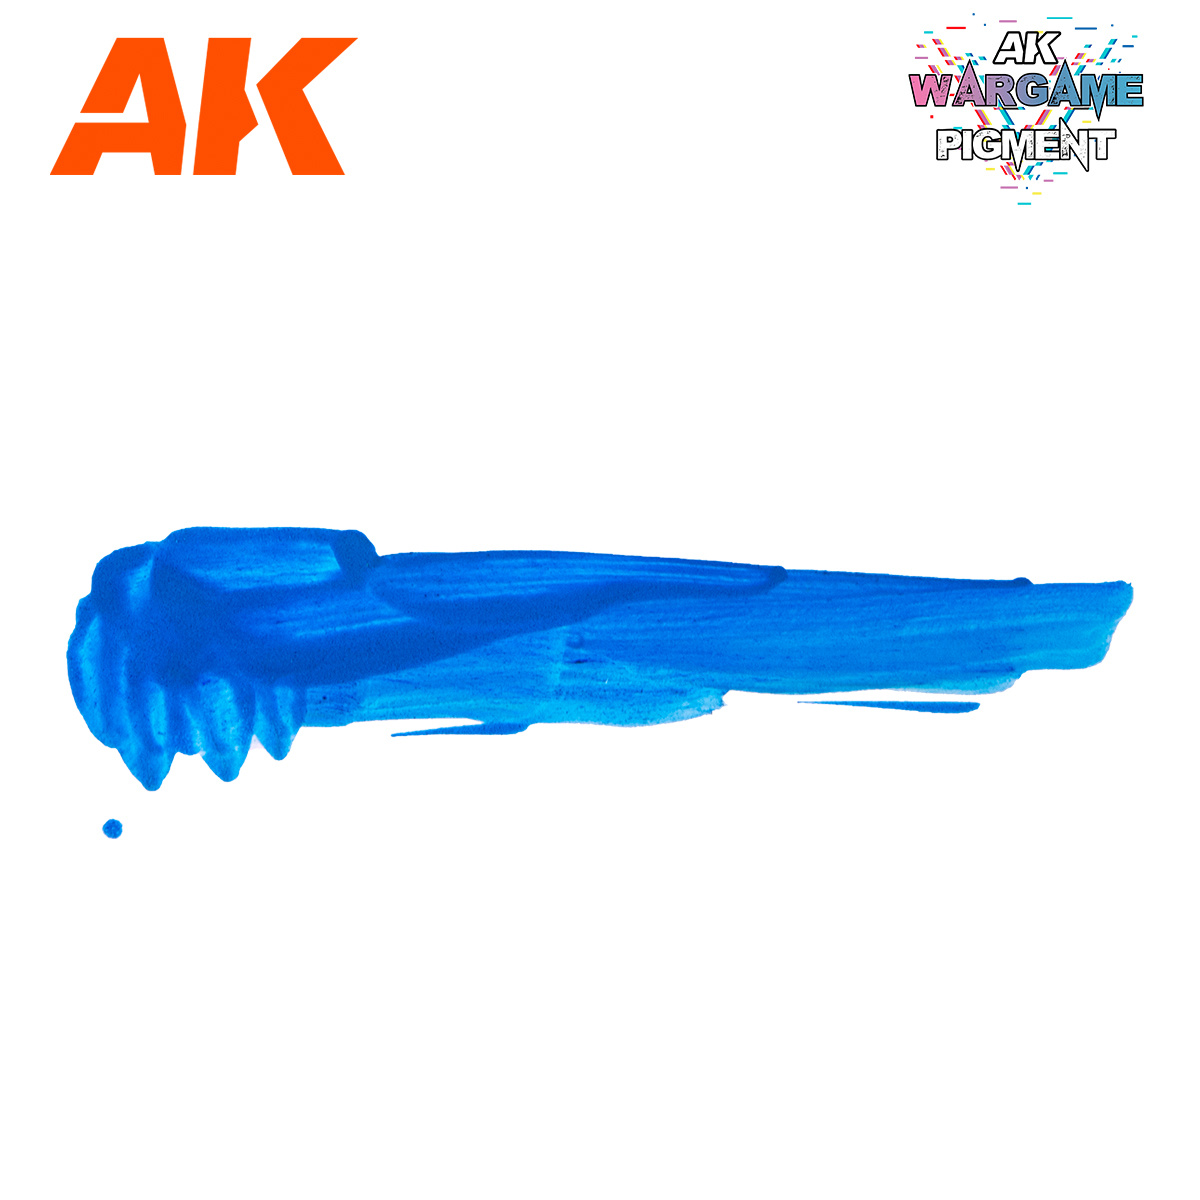 AK-Interactive Psychic Blue - 35ml - AK-Interactive - AK-1206